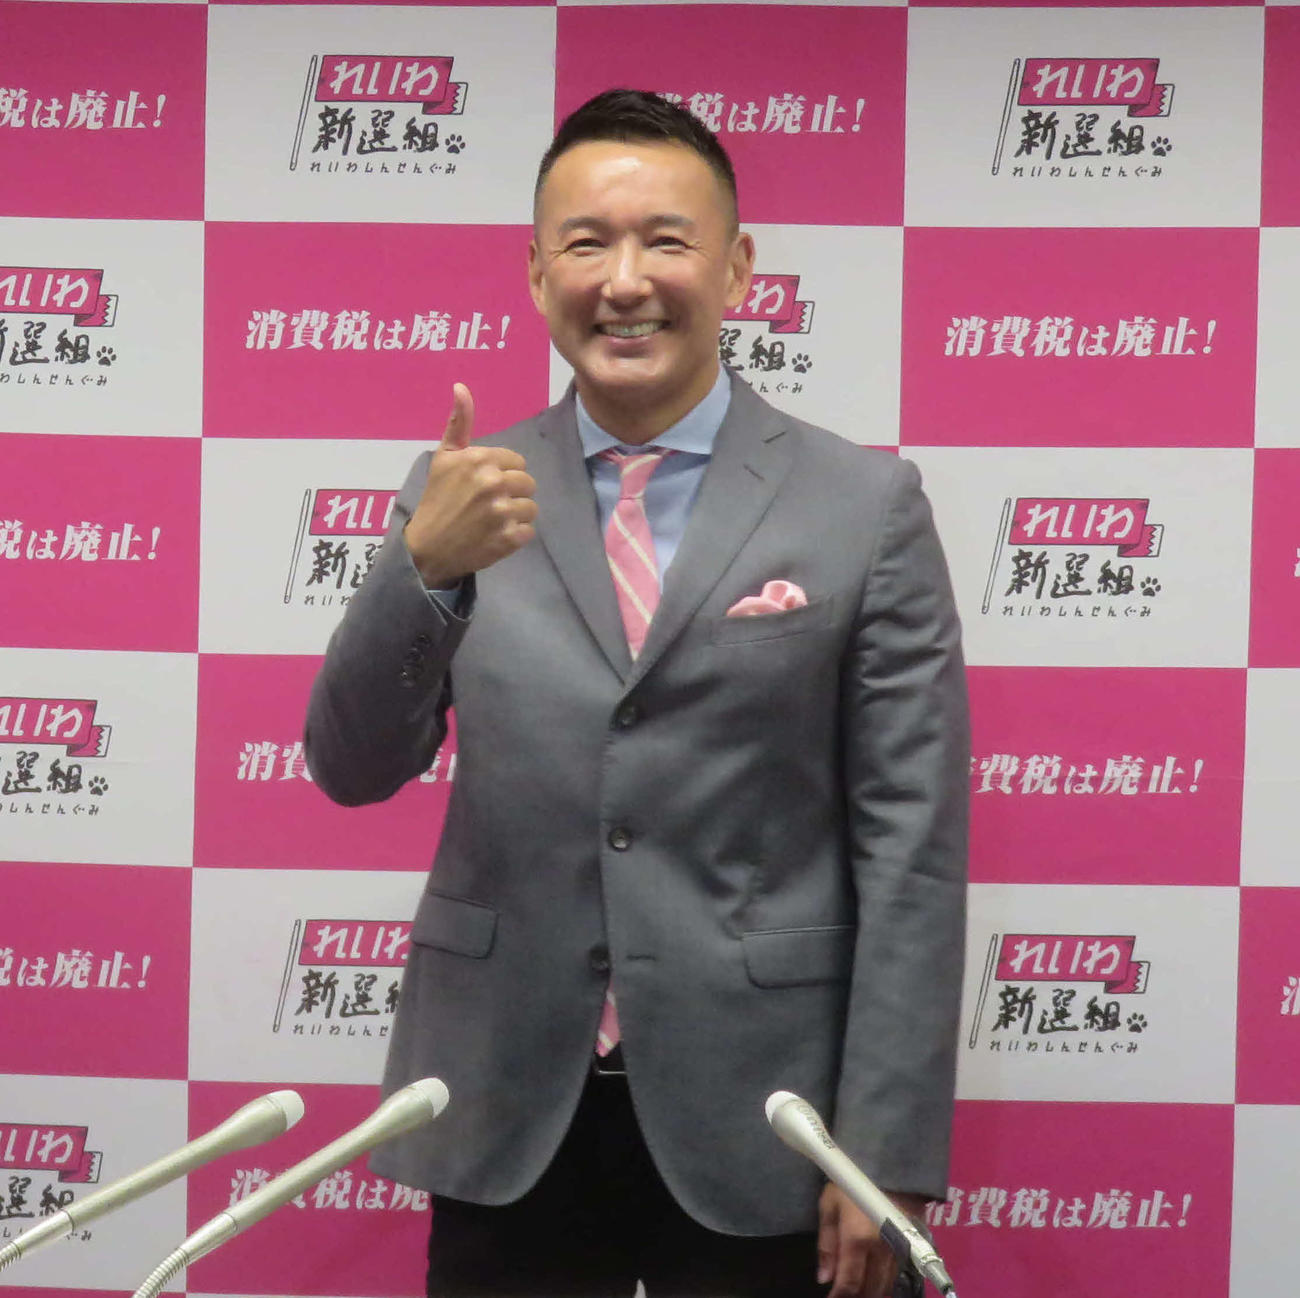 れいわ新選組の山本太郎代表は夏の参院選で東京選挙区から出馬することを表明した（撮影・大上悟）